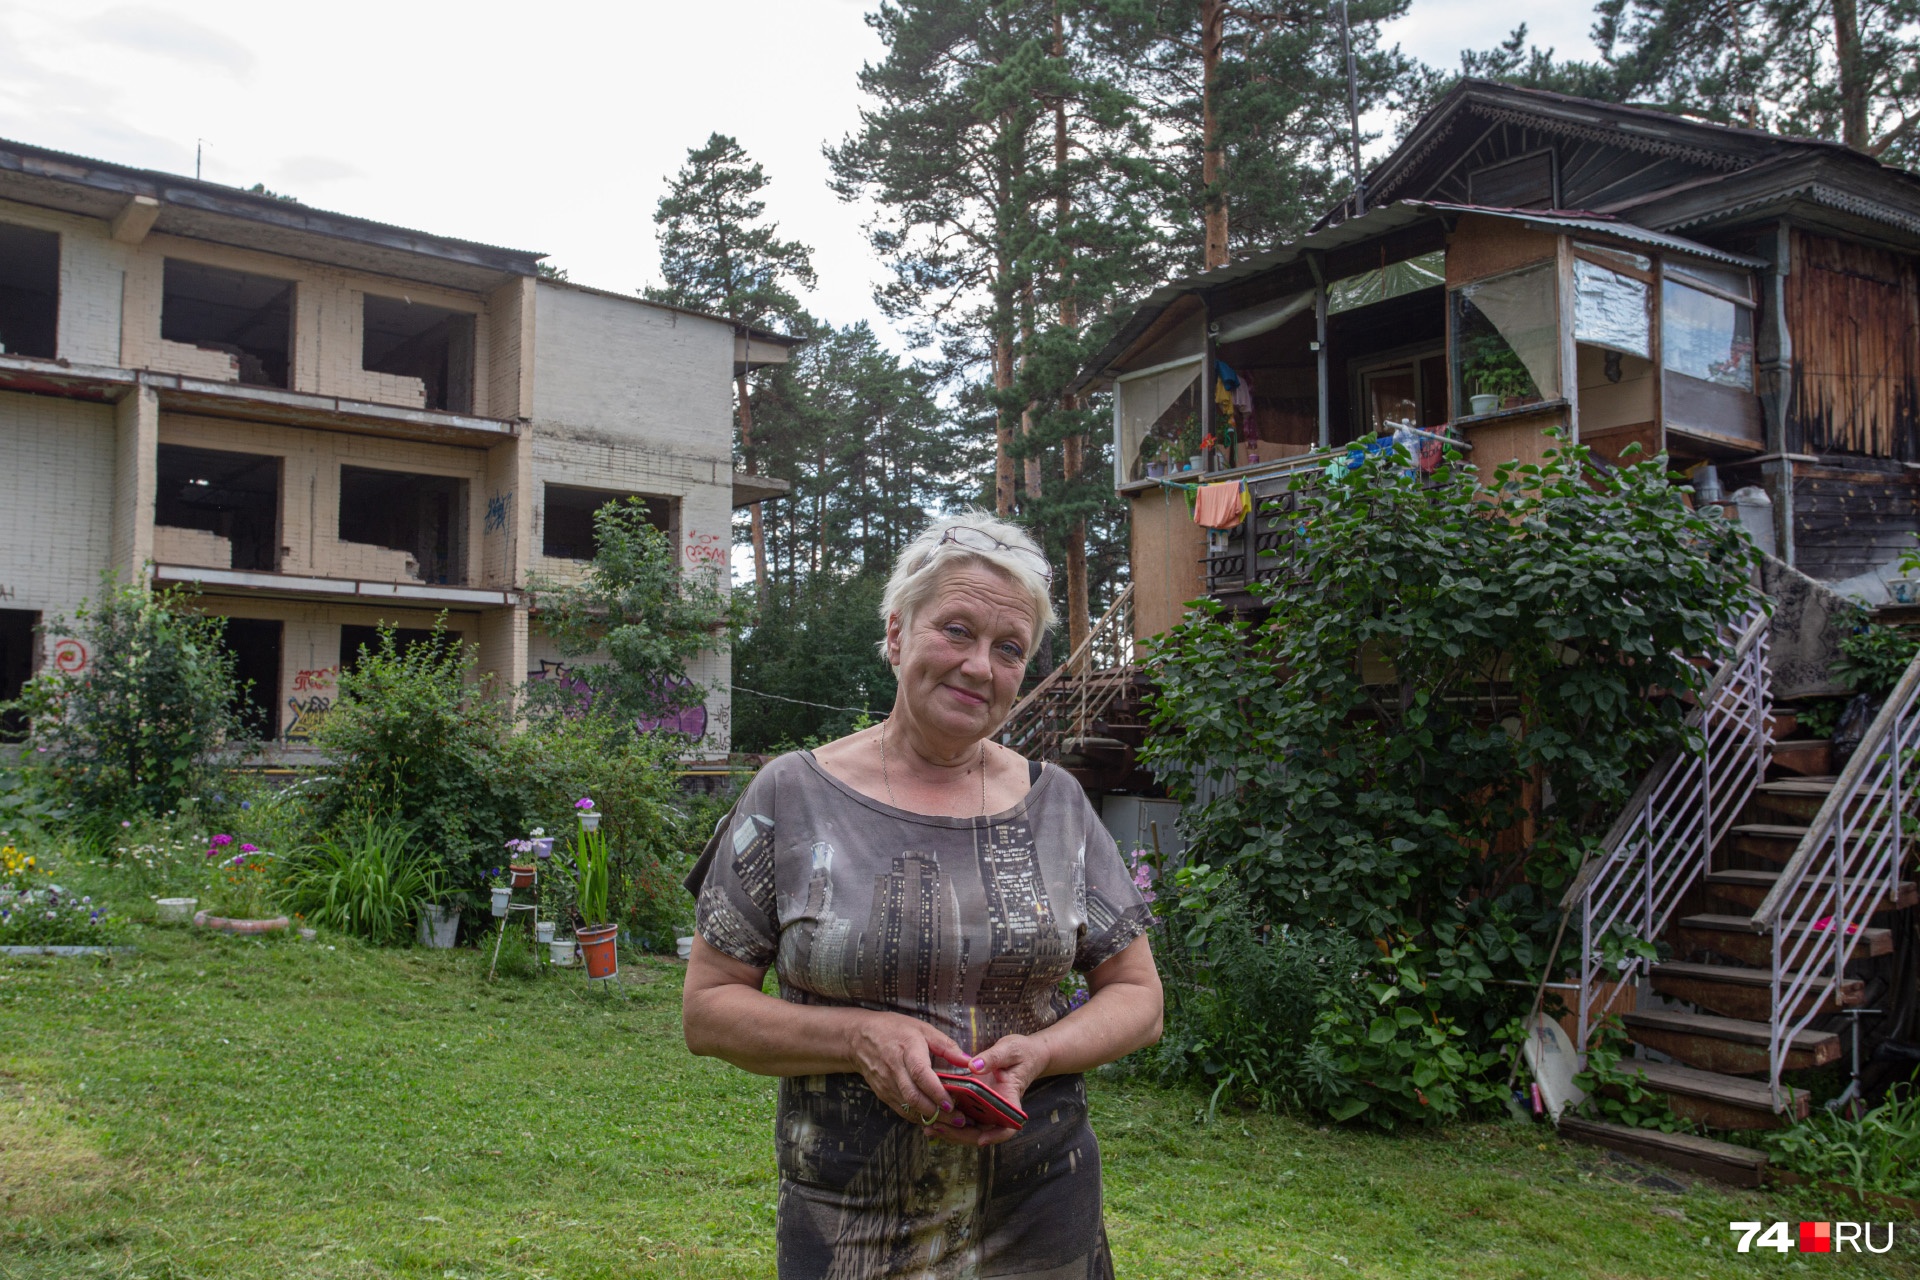 Елена Николаевна живет в деревянном двухэтажном доме больше 30 лет